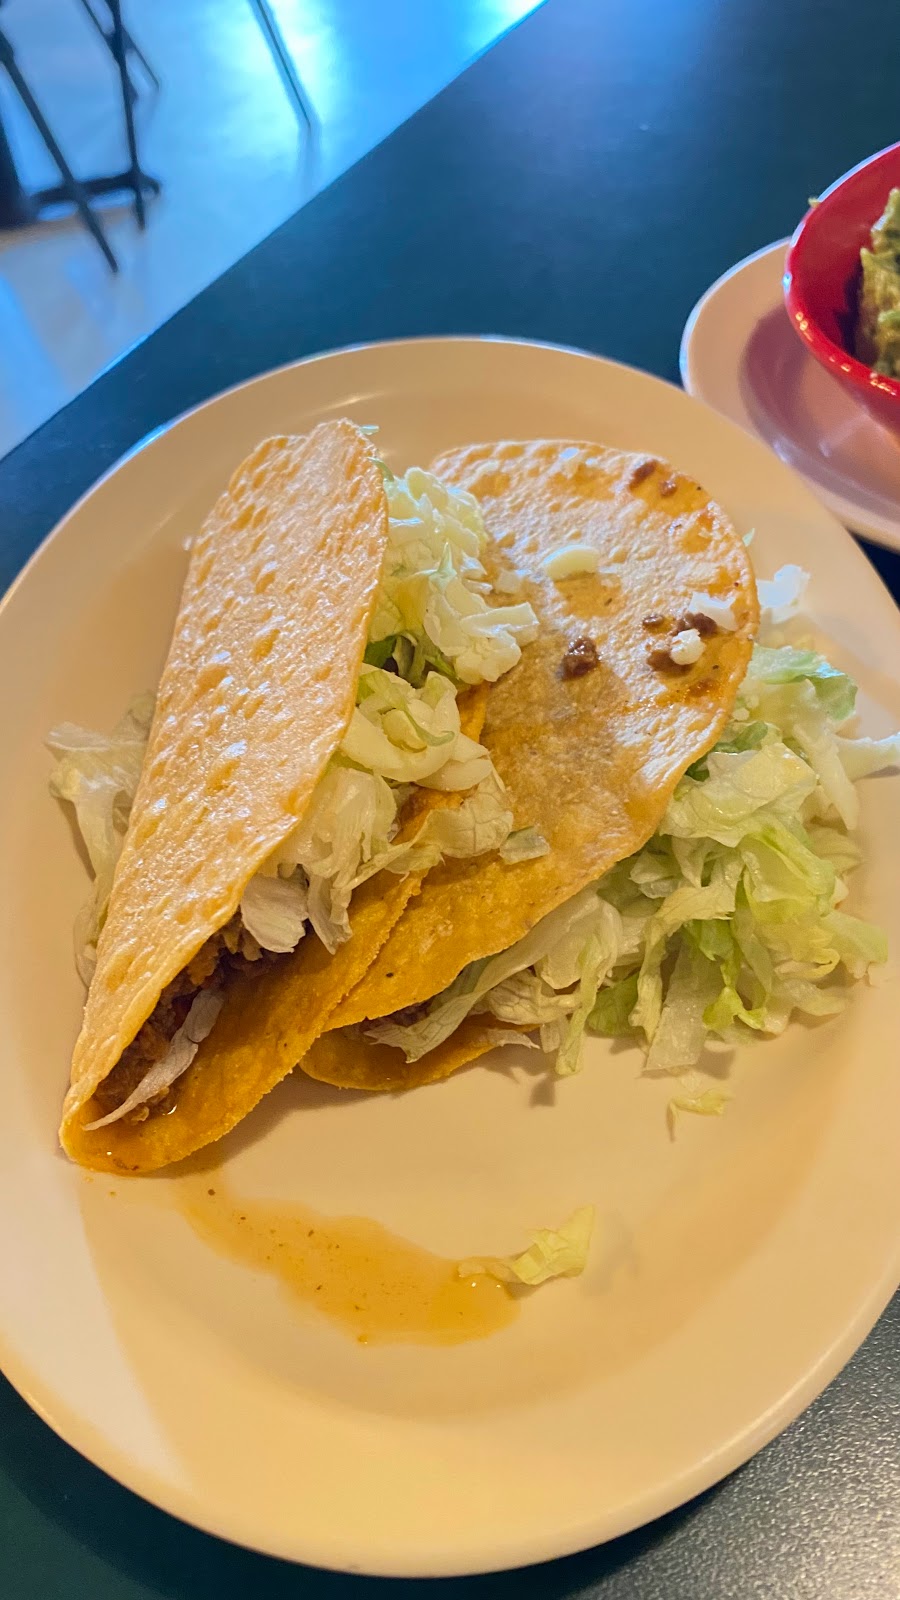 Ricos Mexican Restaurant | 386 E Atlanta Rd, Stockbridge, GA 30281 | Phone: (678) 289-5740